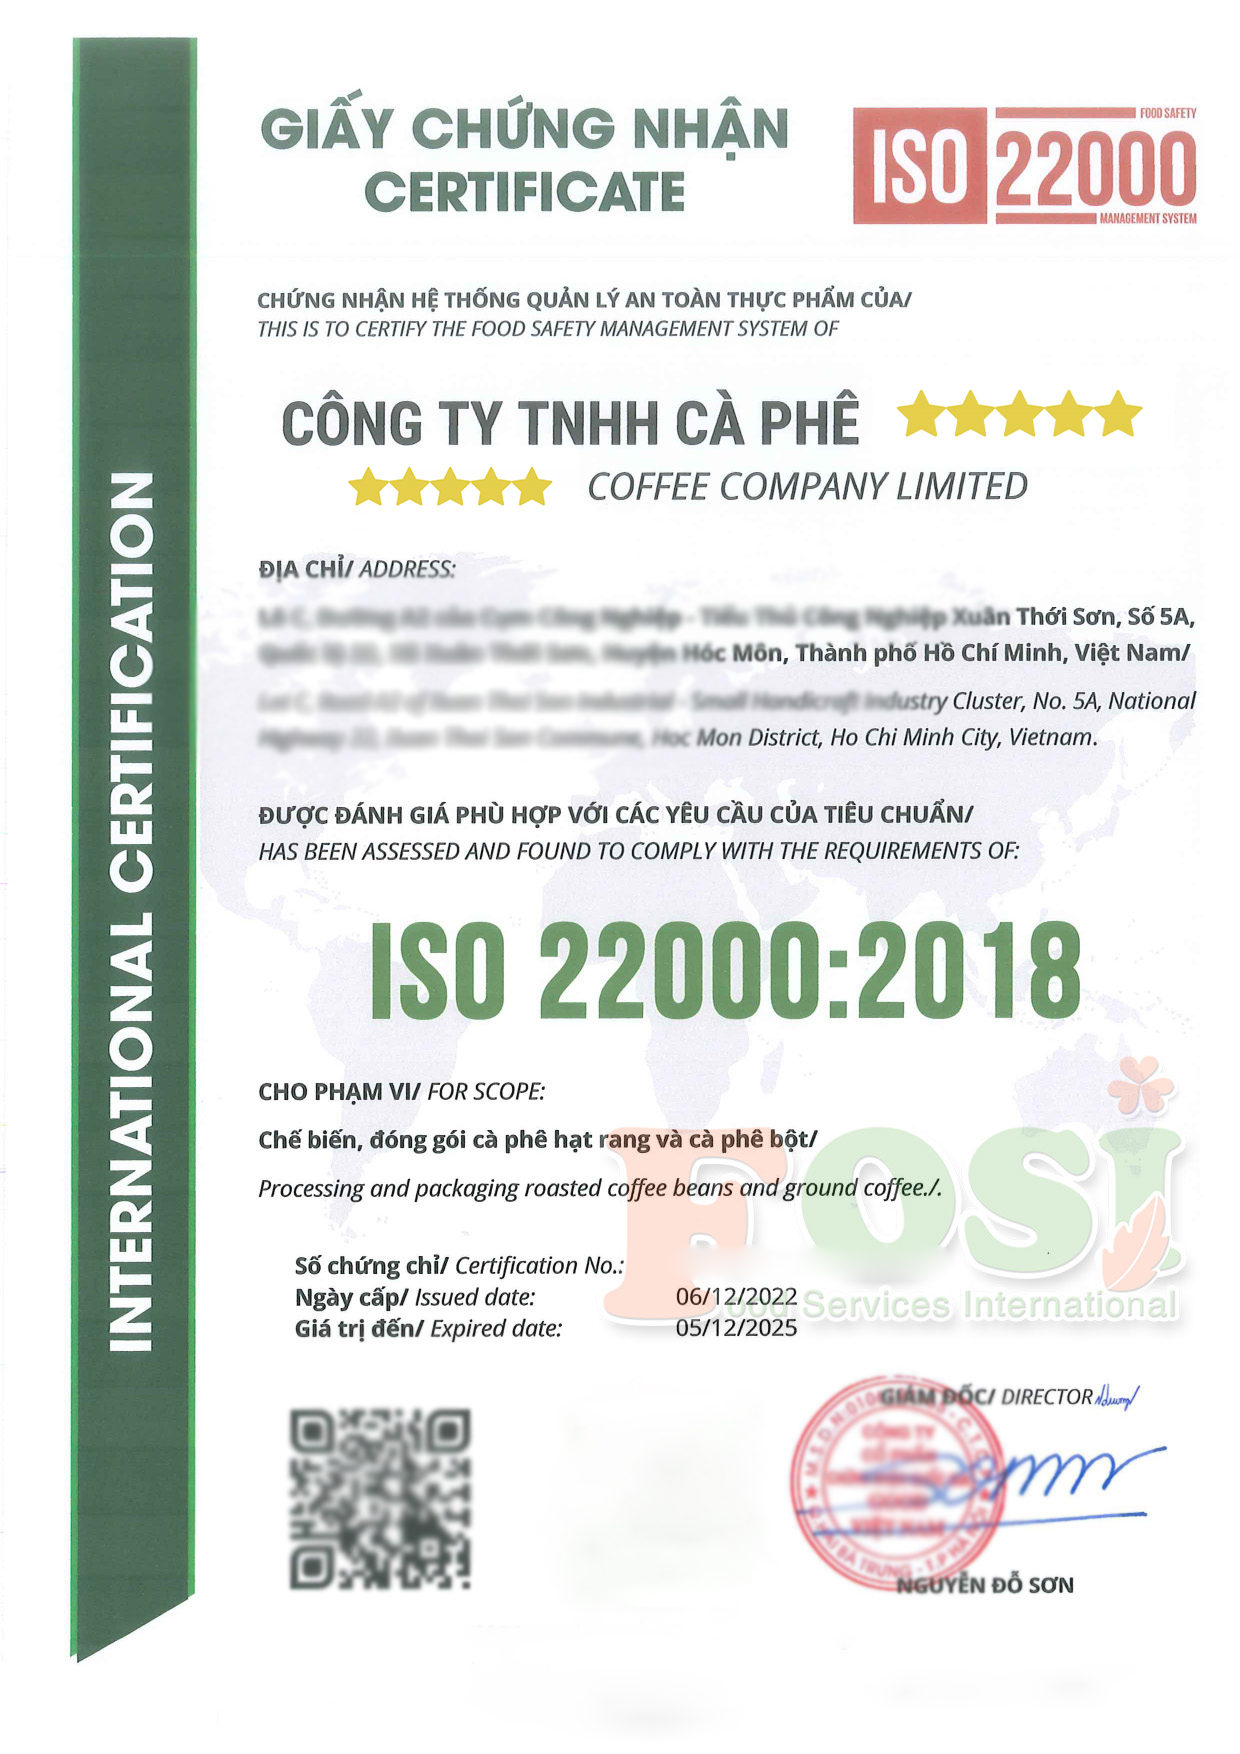 giấy chứng nhận ISO 22000:2018 của công ty cà phê